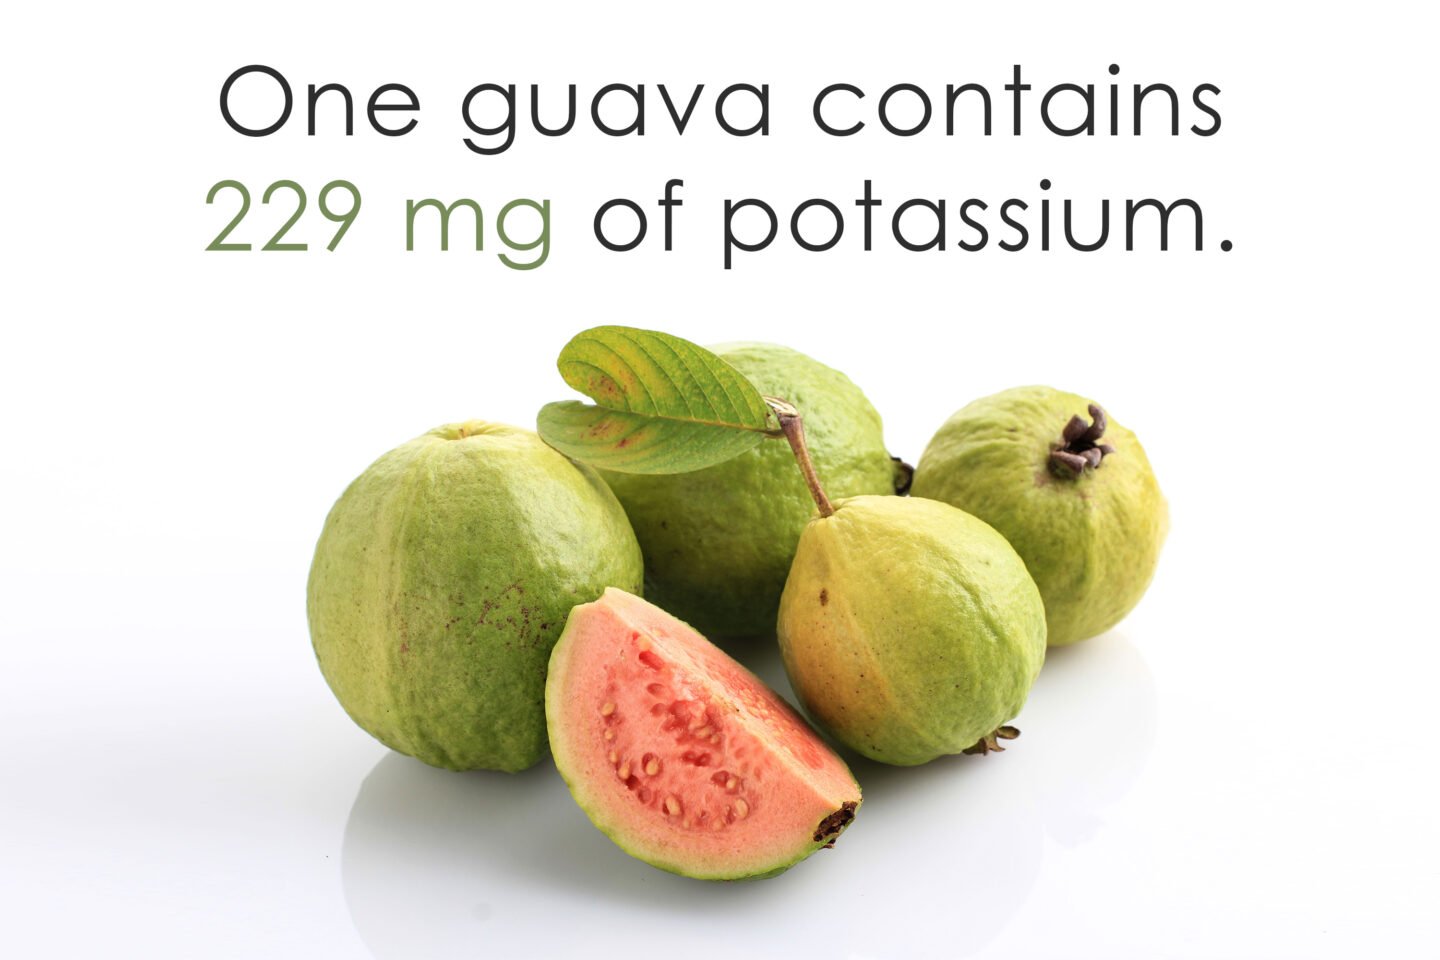 potassium in guavas